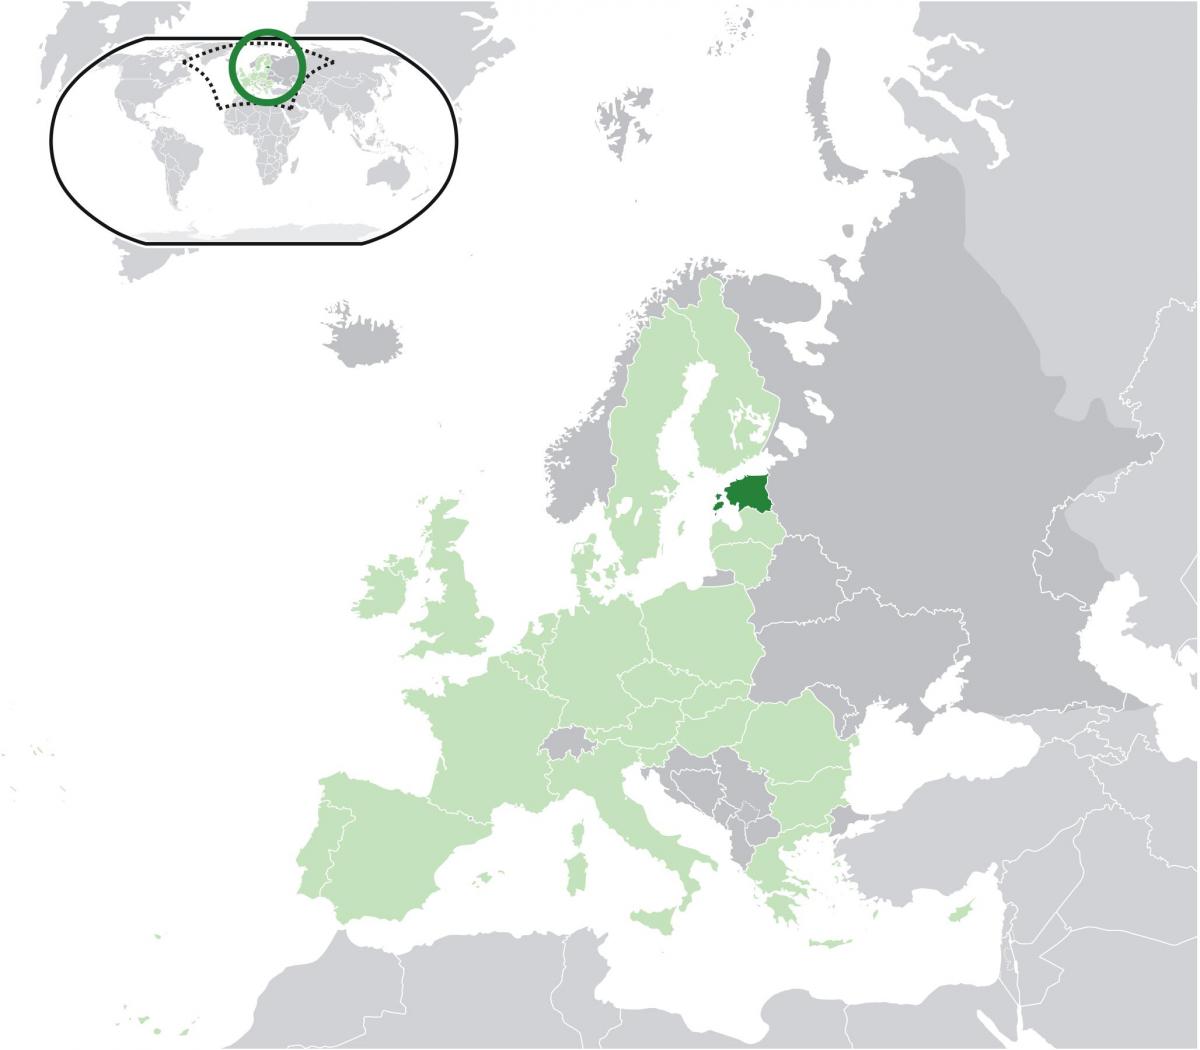 إستونيا على خريطة أوروبا